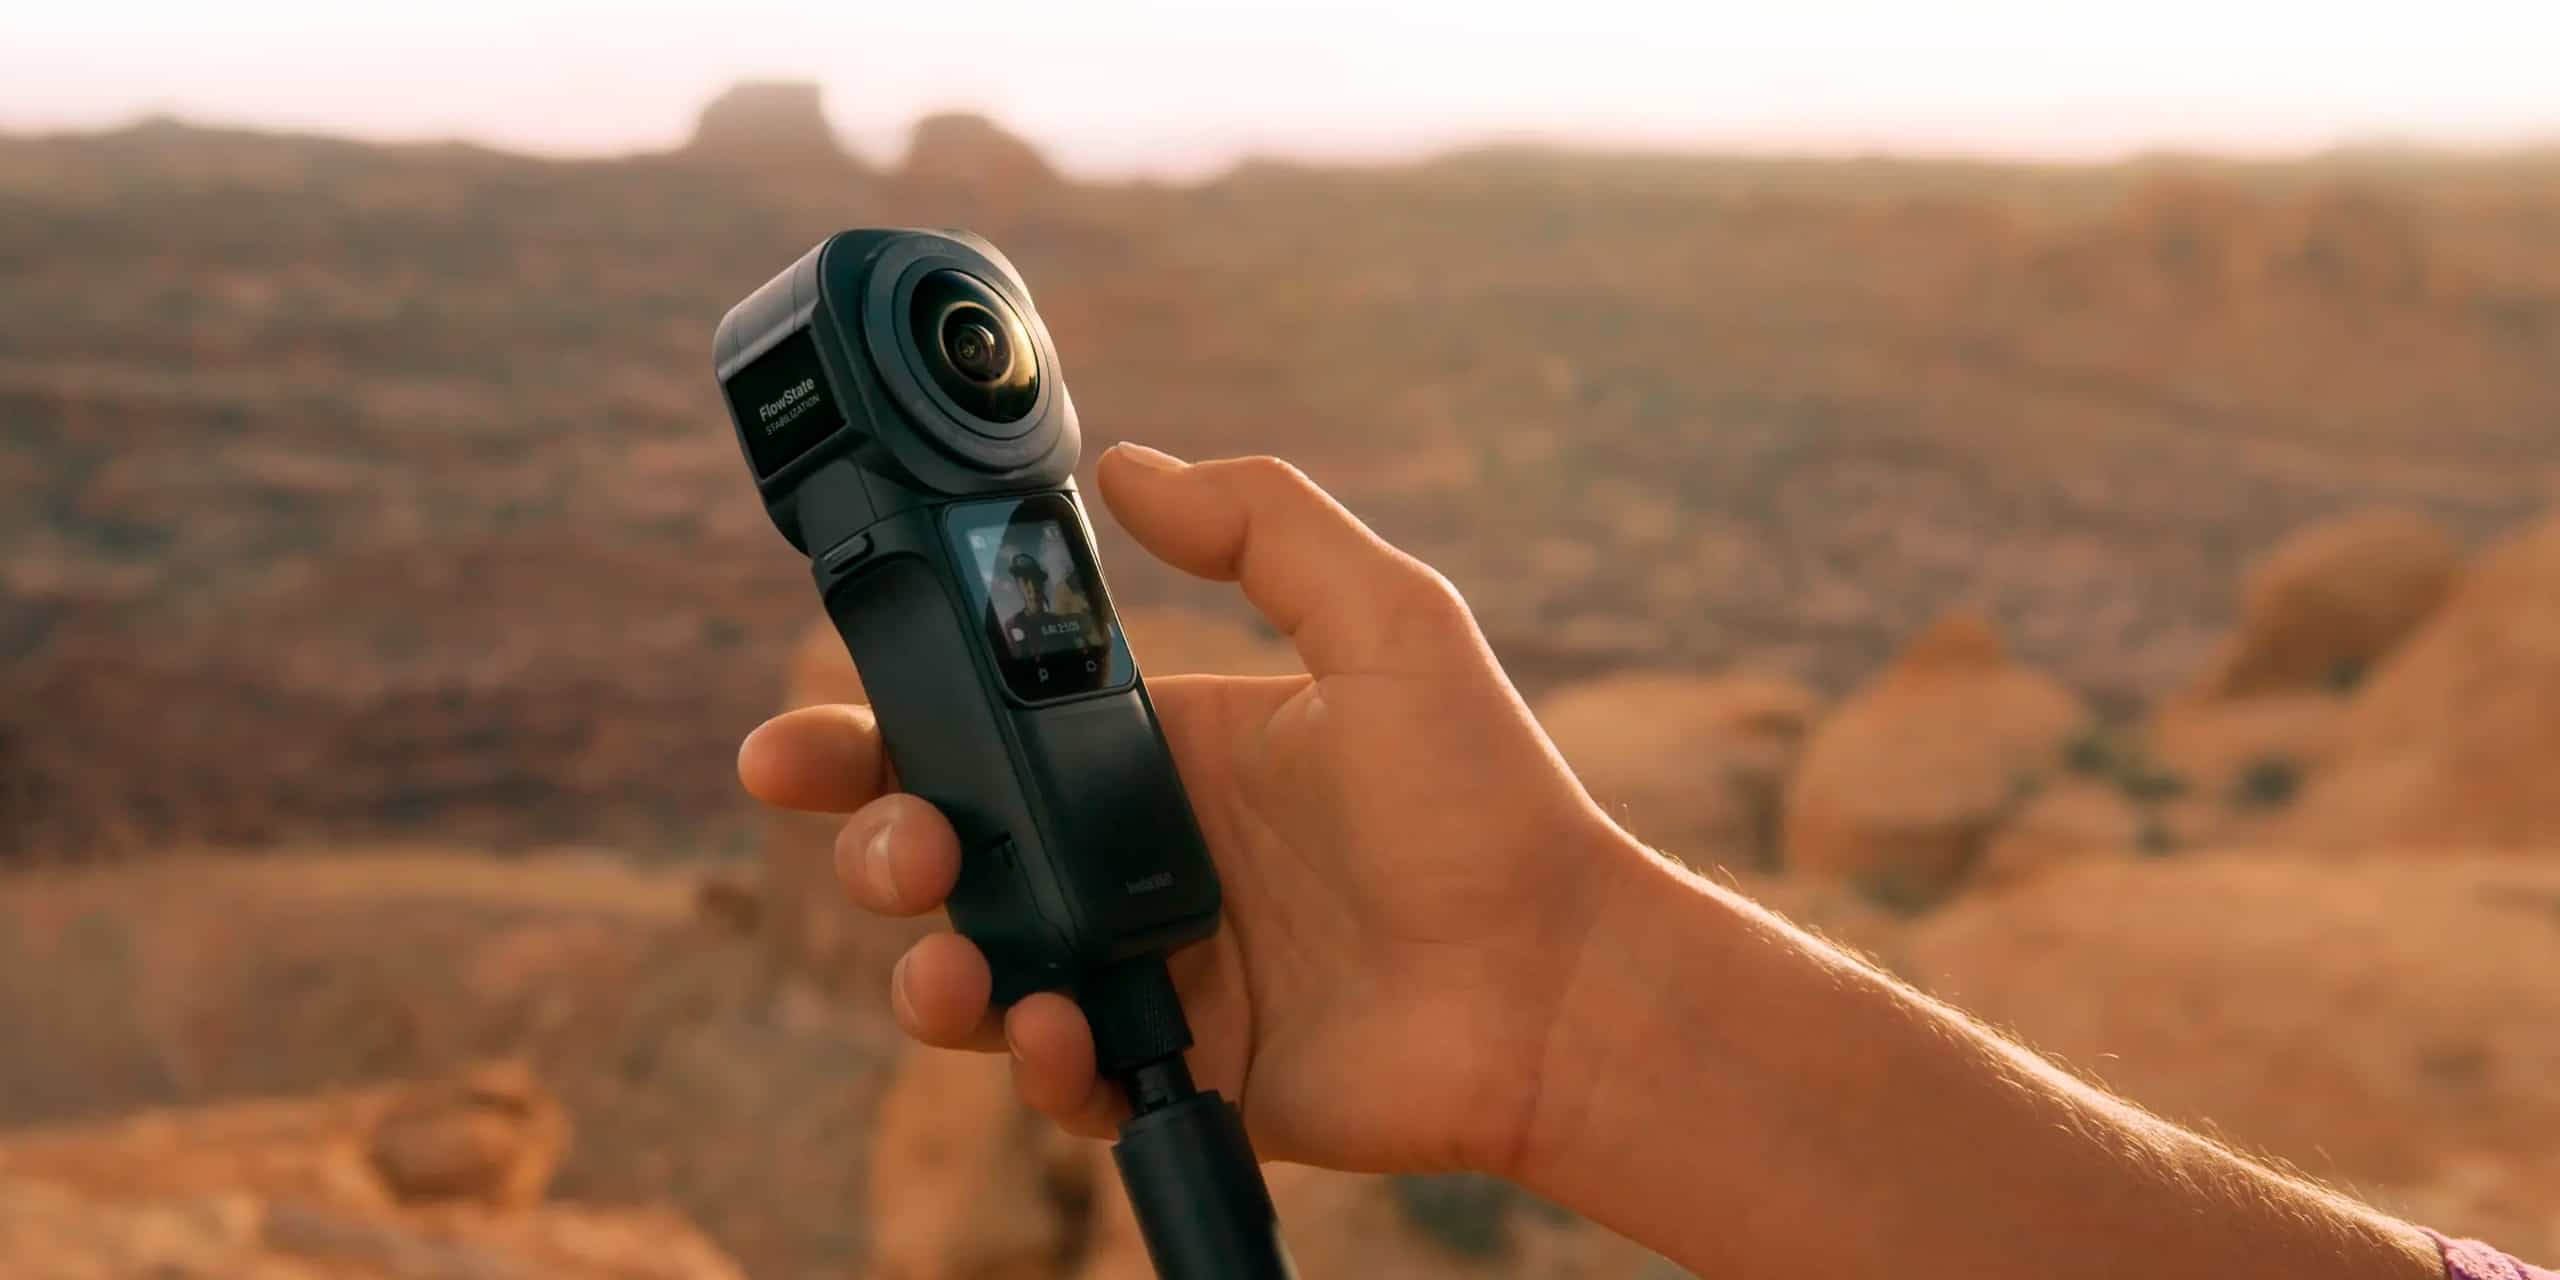 Puesta en marcha de la cámara Insta360 One RS 1 Inch by Leica para grabar en un desierto